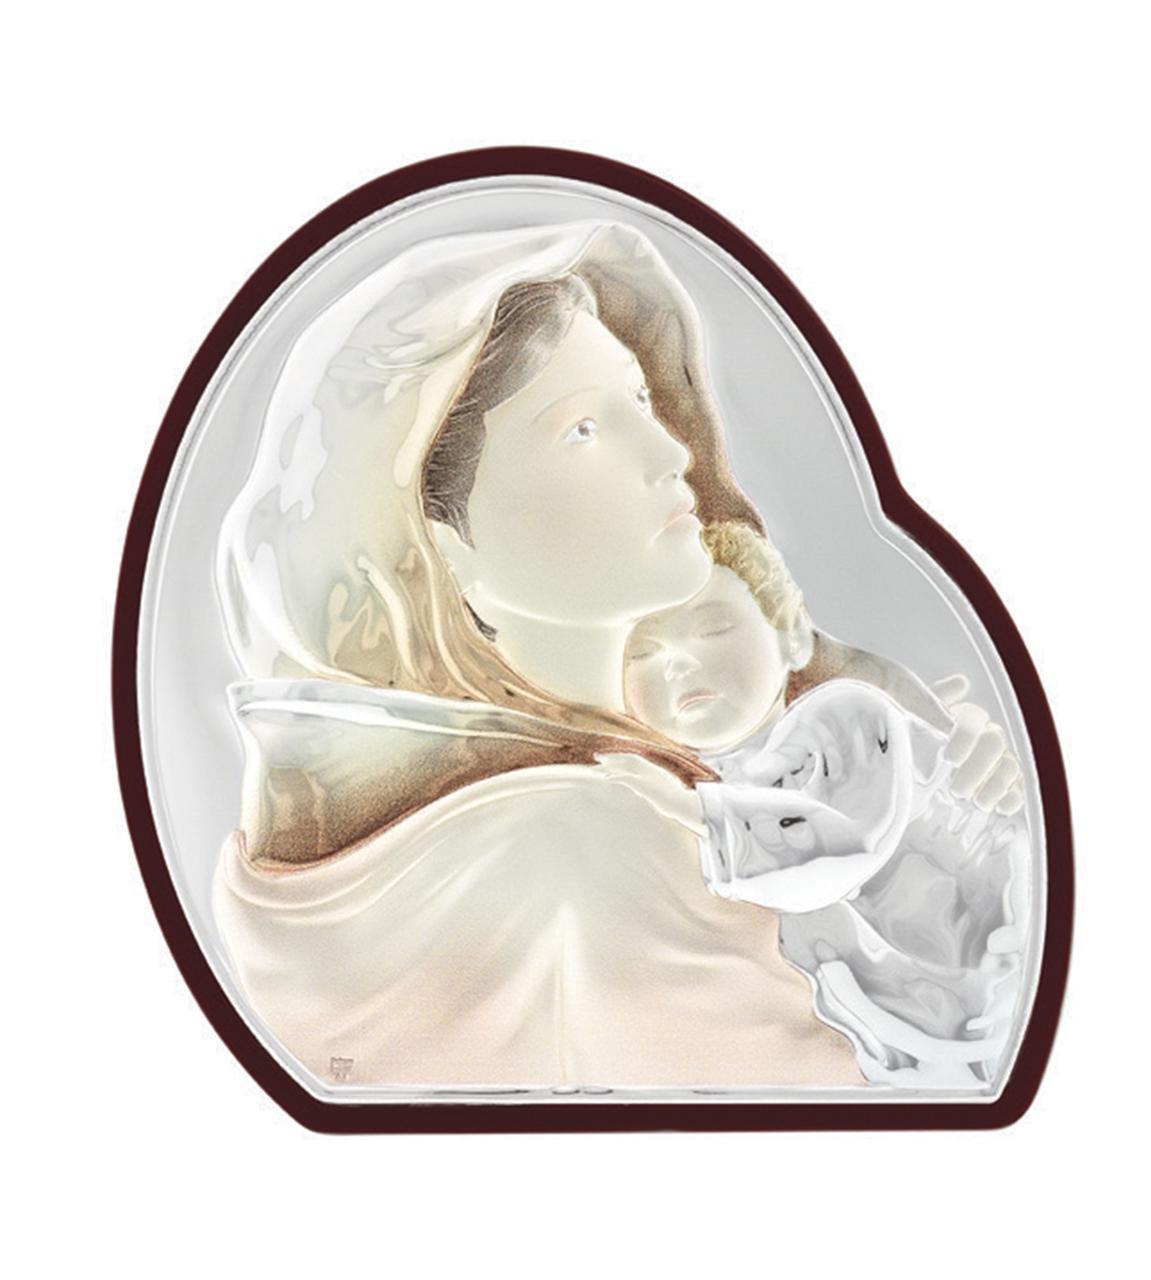 Срібна ікона Богородиця з немовлям в овальній формі з емаллю 7,5х8 см Роберто Ферруцці